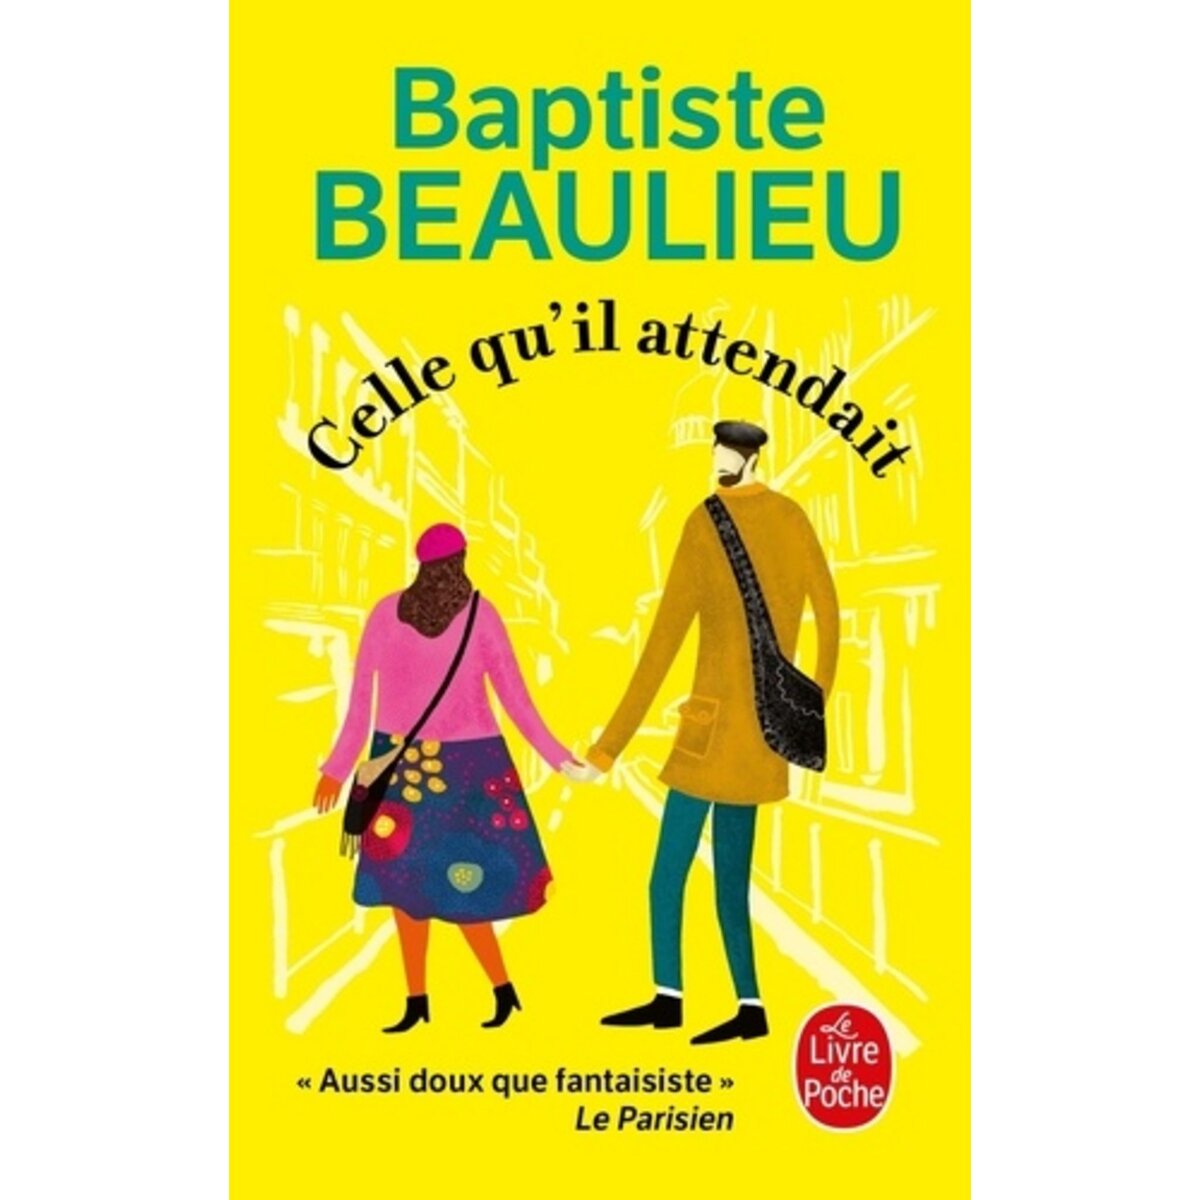  CELLE QU'IL ATTENDAIT, Beaulieu Baptiste